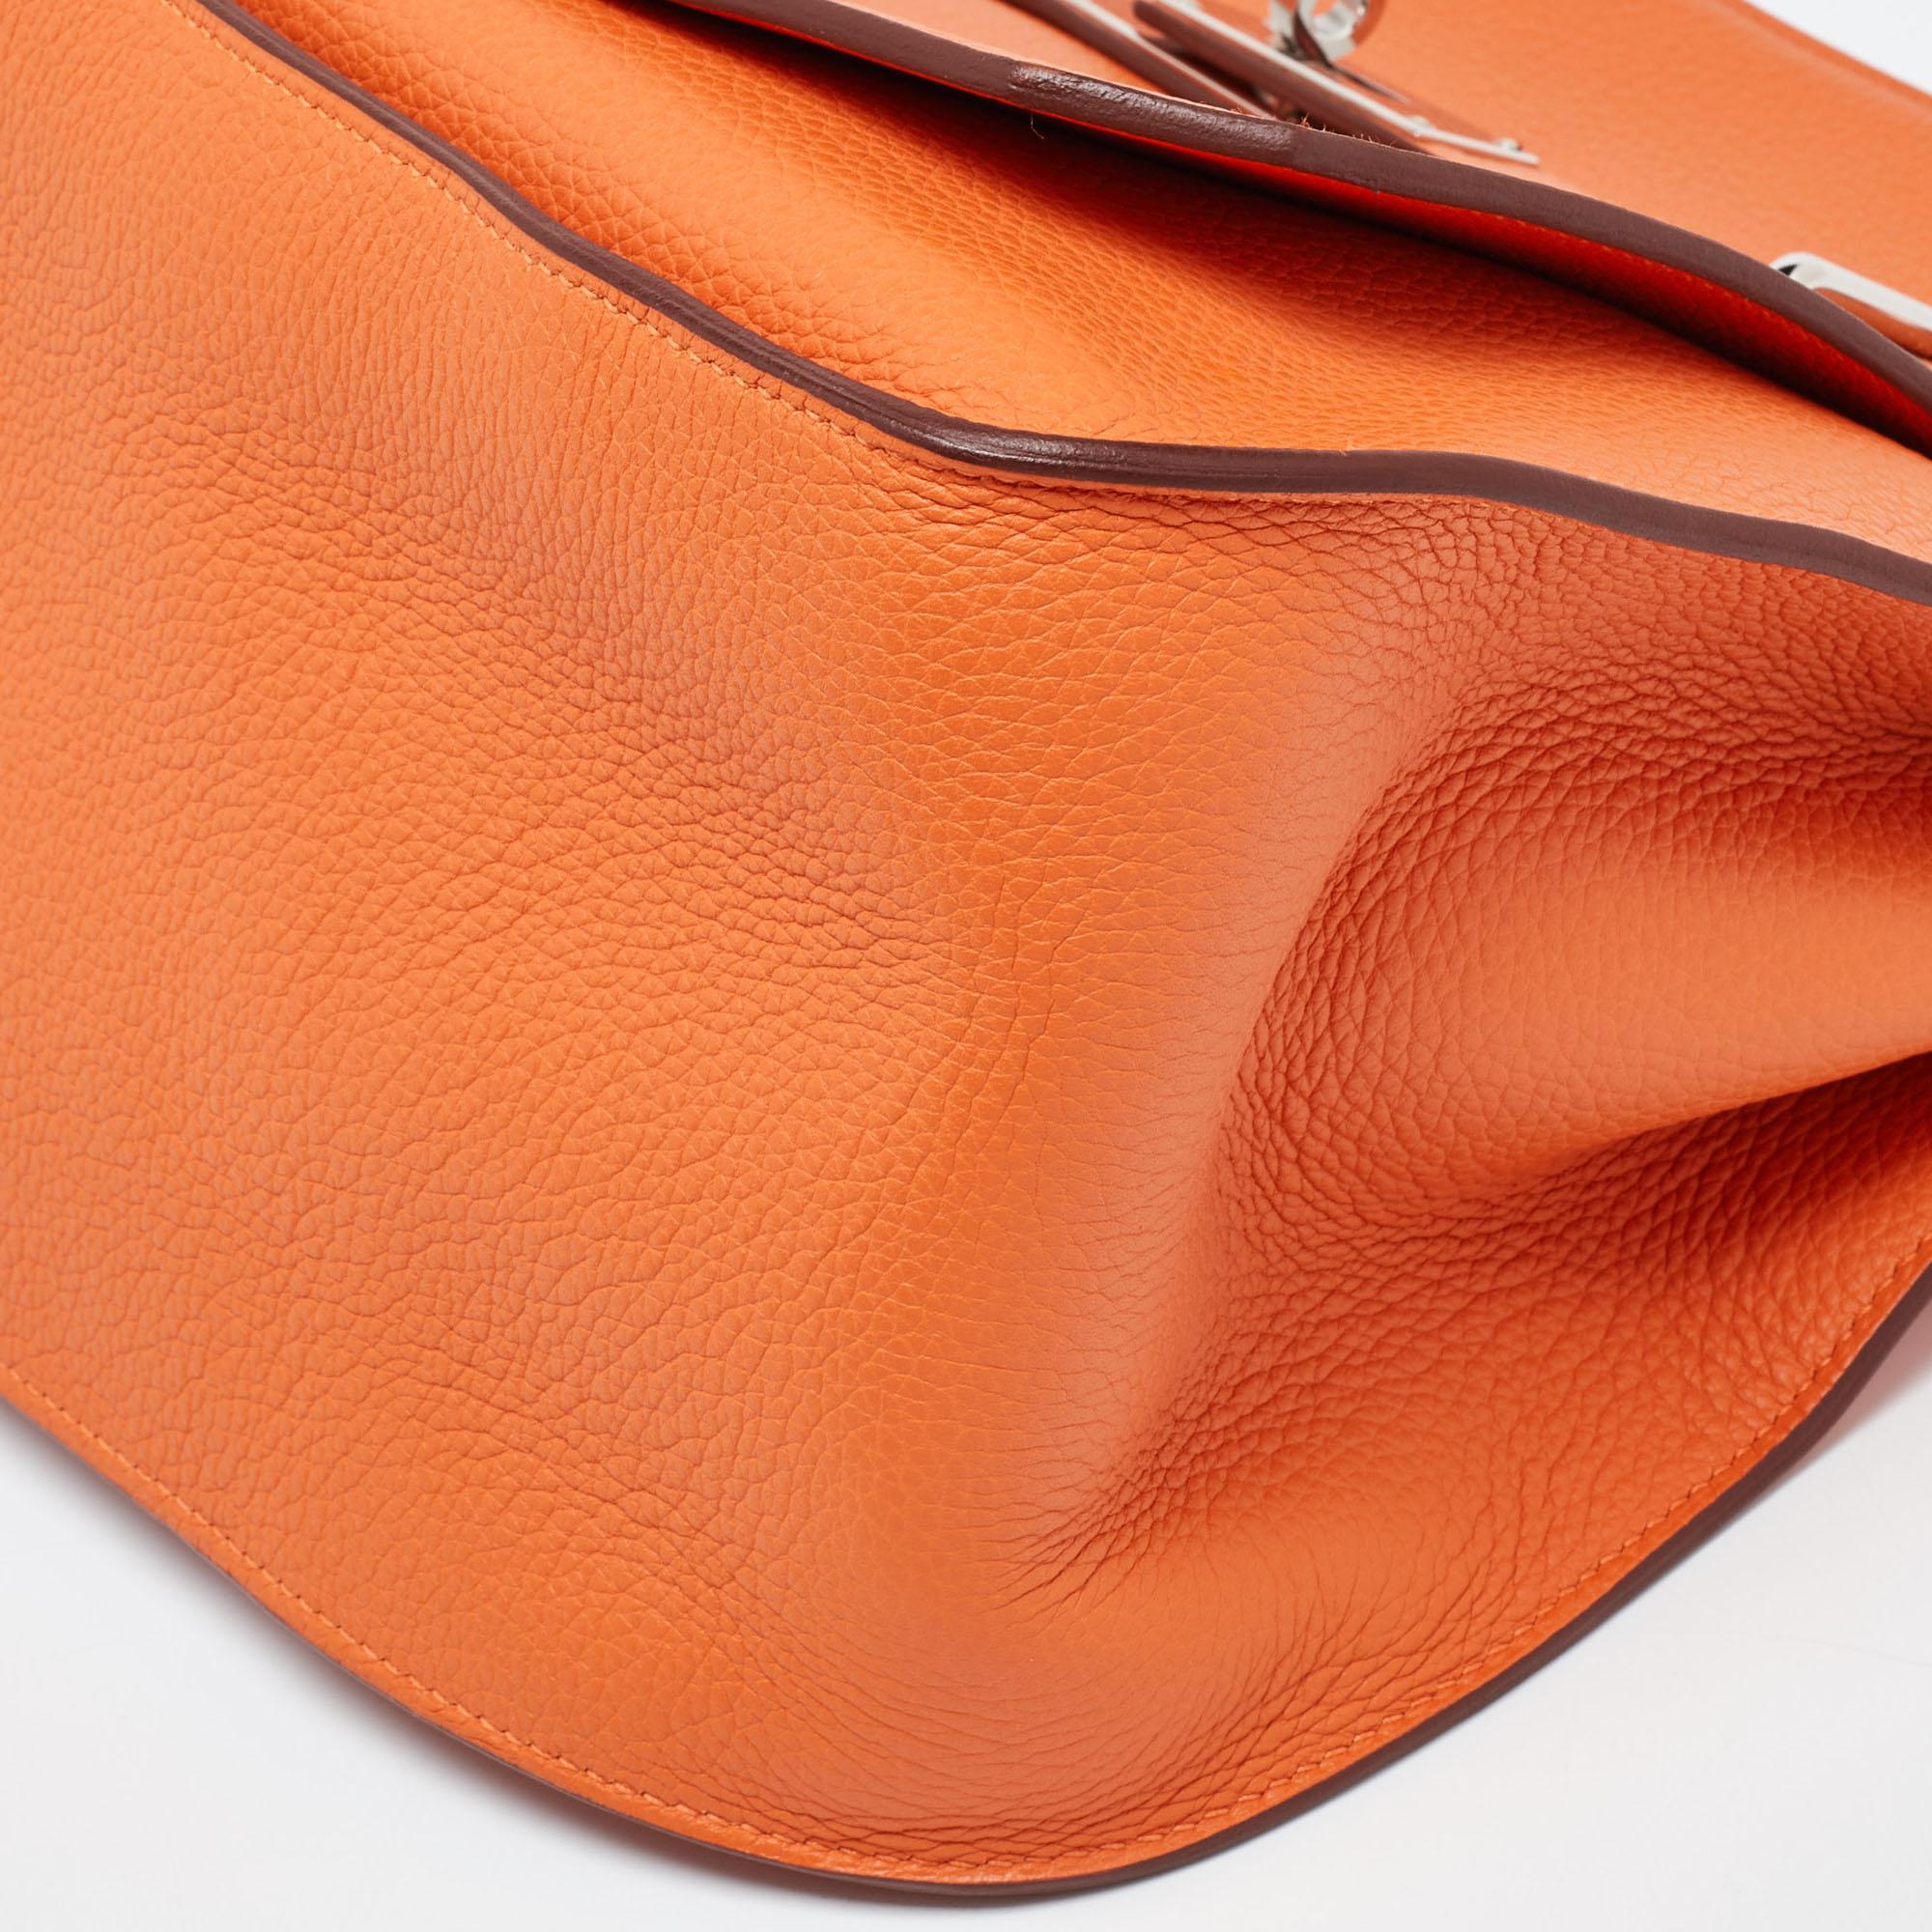 Hermès Orange Togo Leather Palladium Finish Jypsiere 37 Bag For Sale 3